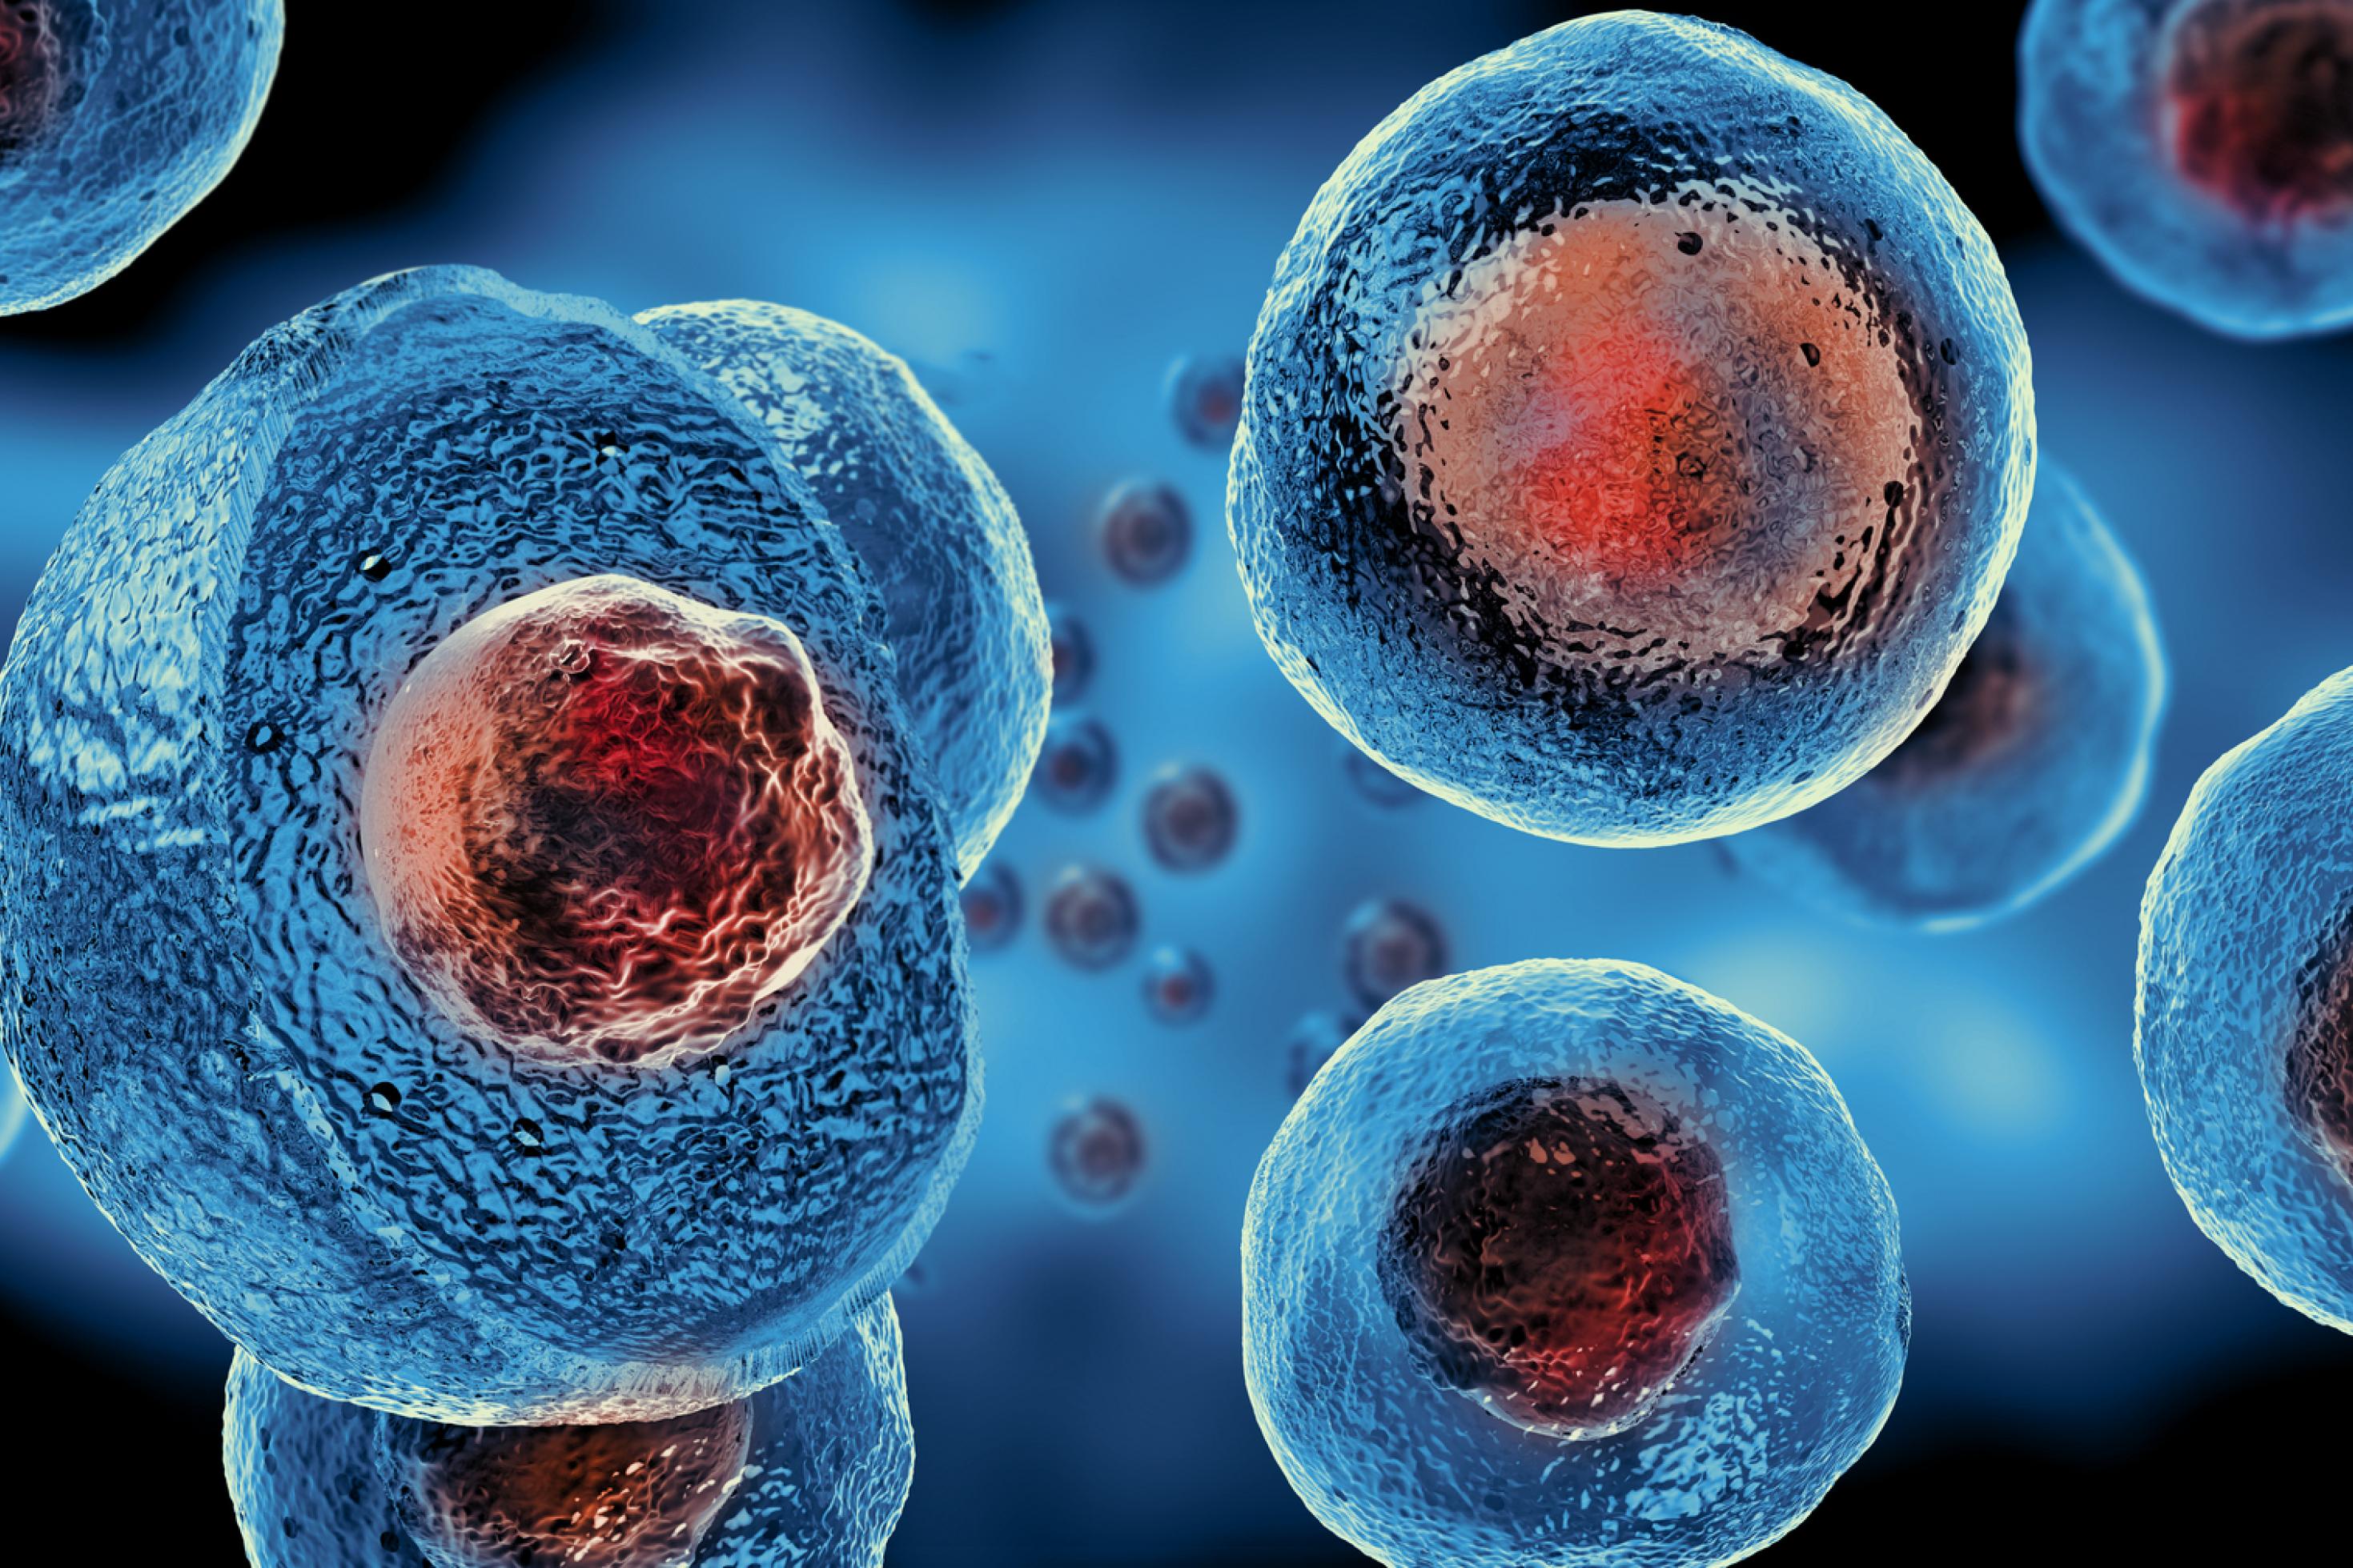 Eine Grafik zeigt mehrere runde, blau eingefärbte Zellen. Sie sind etwas durchsichtig, so dass ein rot gefärbter Zellkern hindurchscheint.